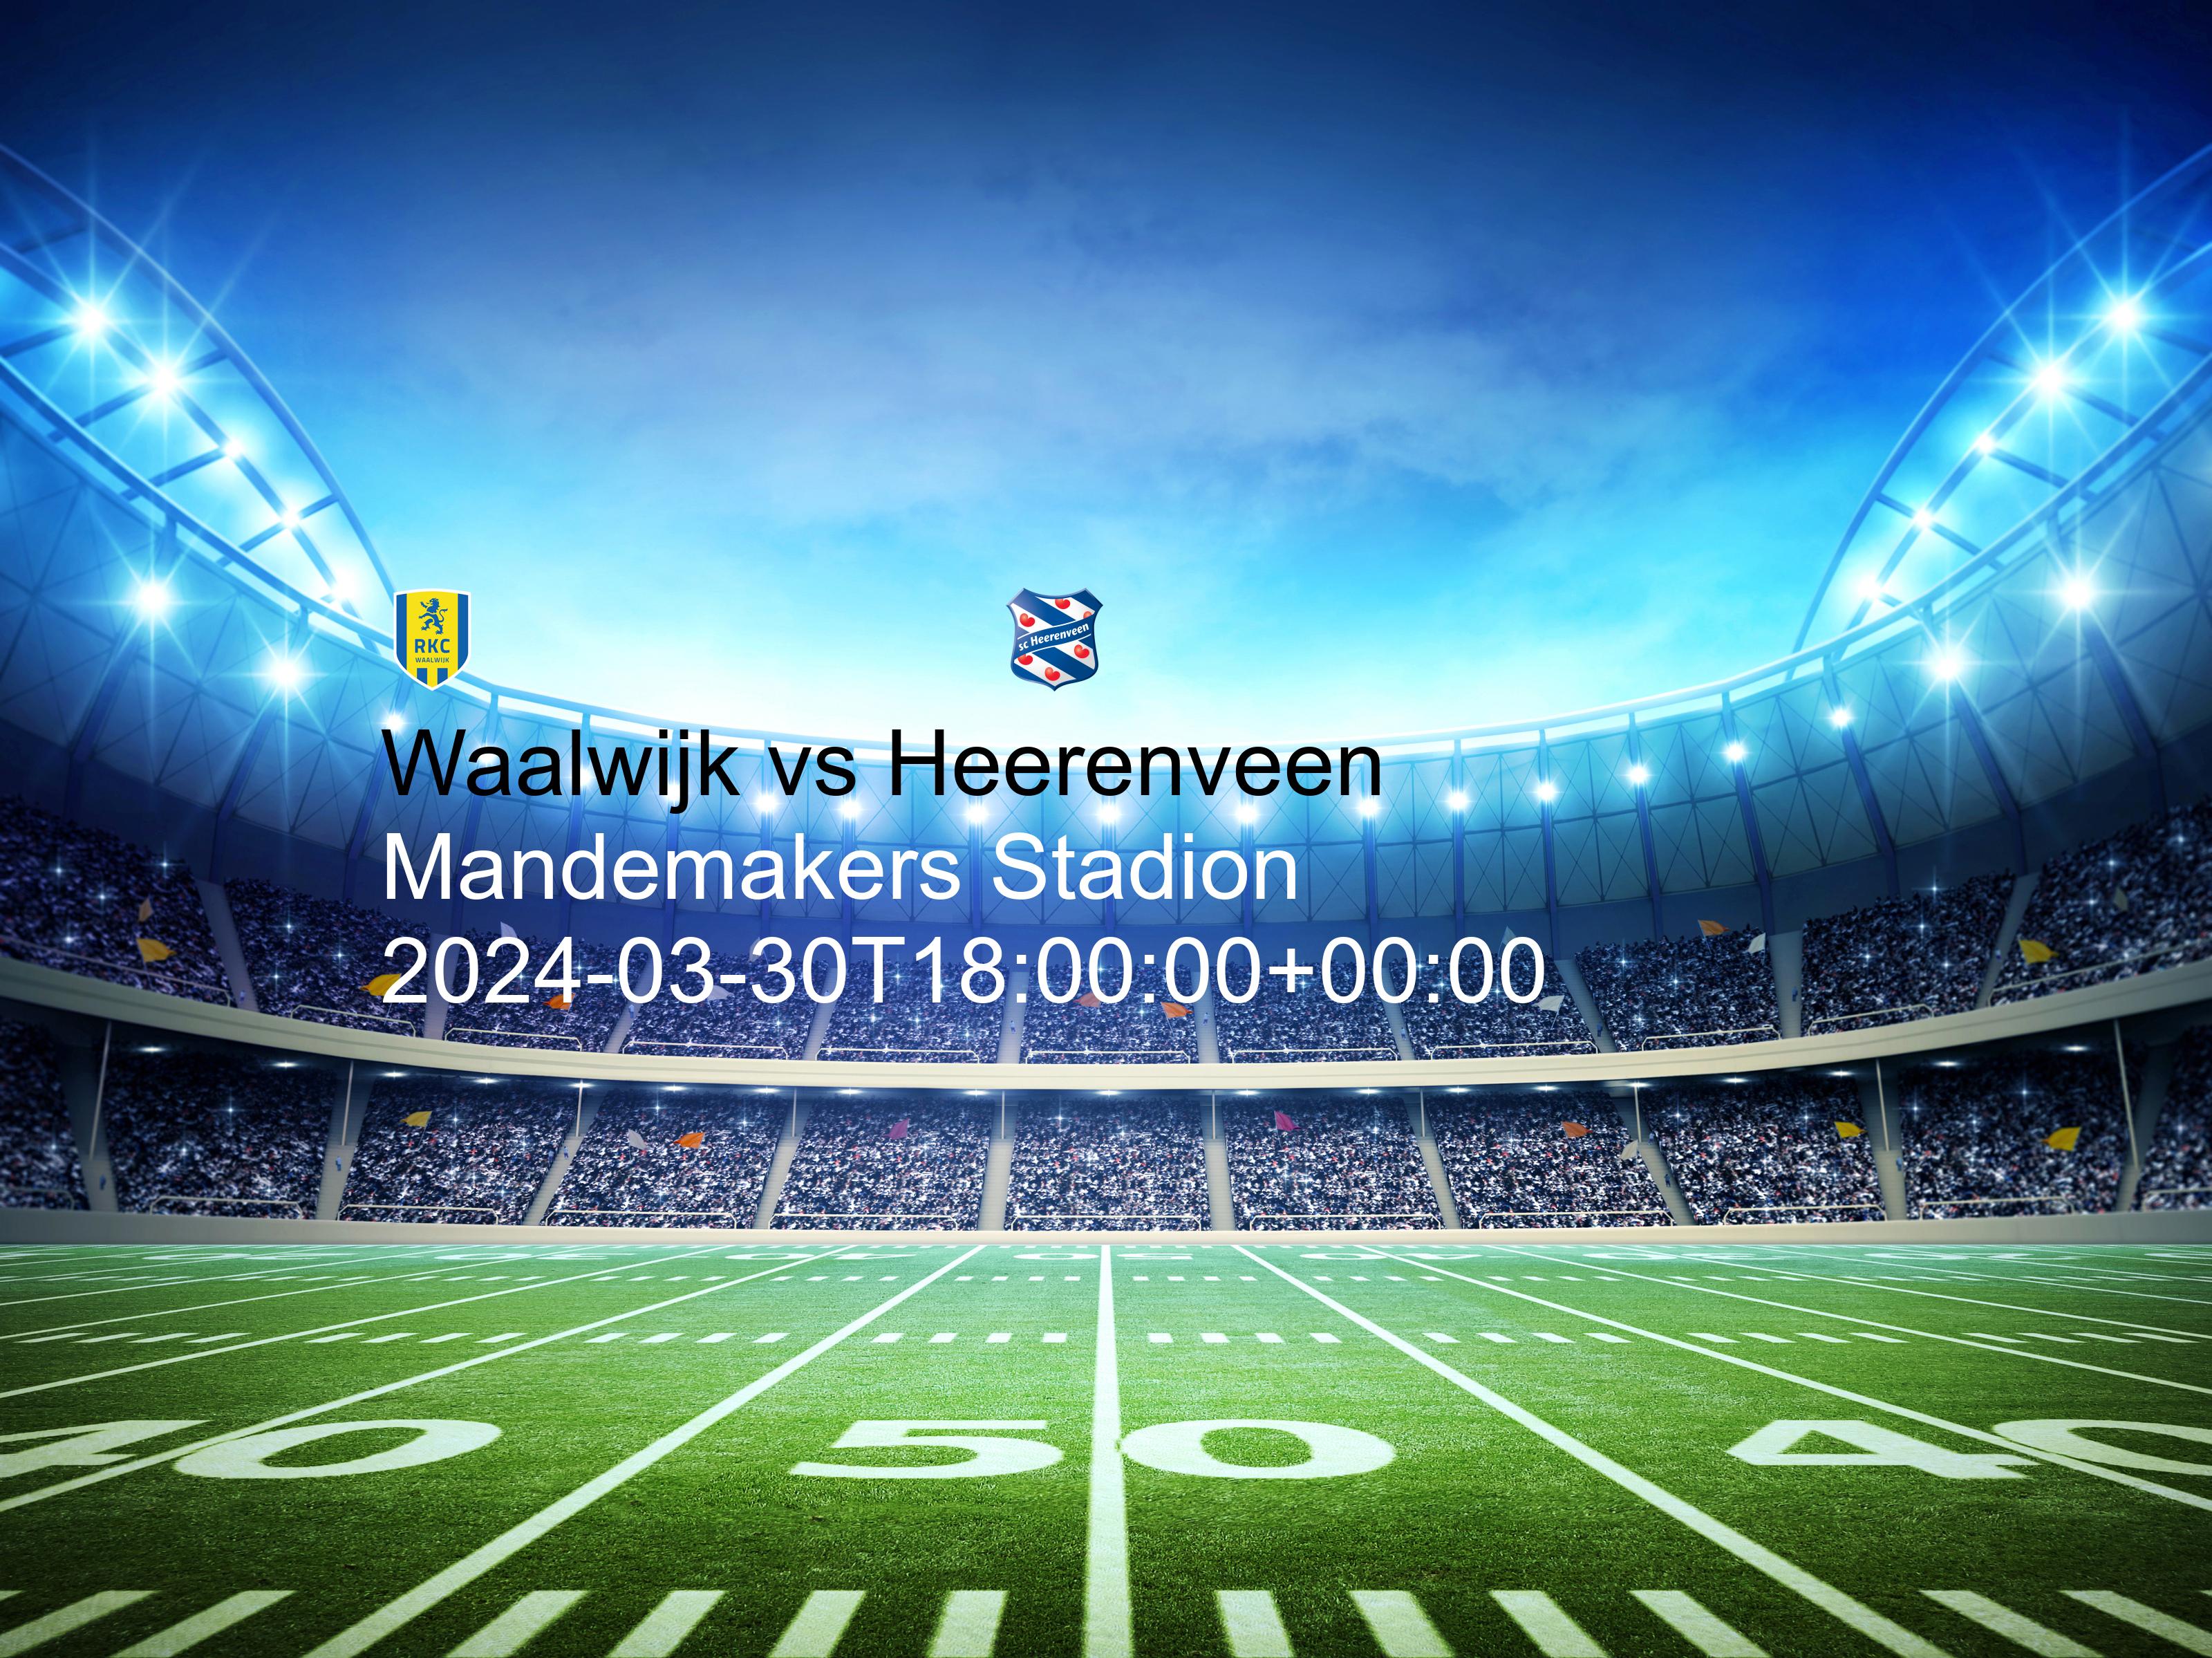 Waalwijk vs Heerenveen free betting tips